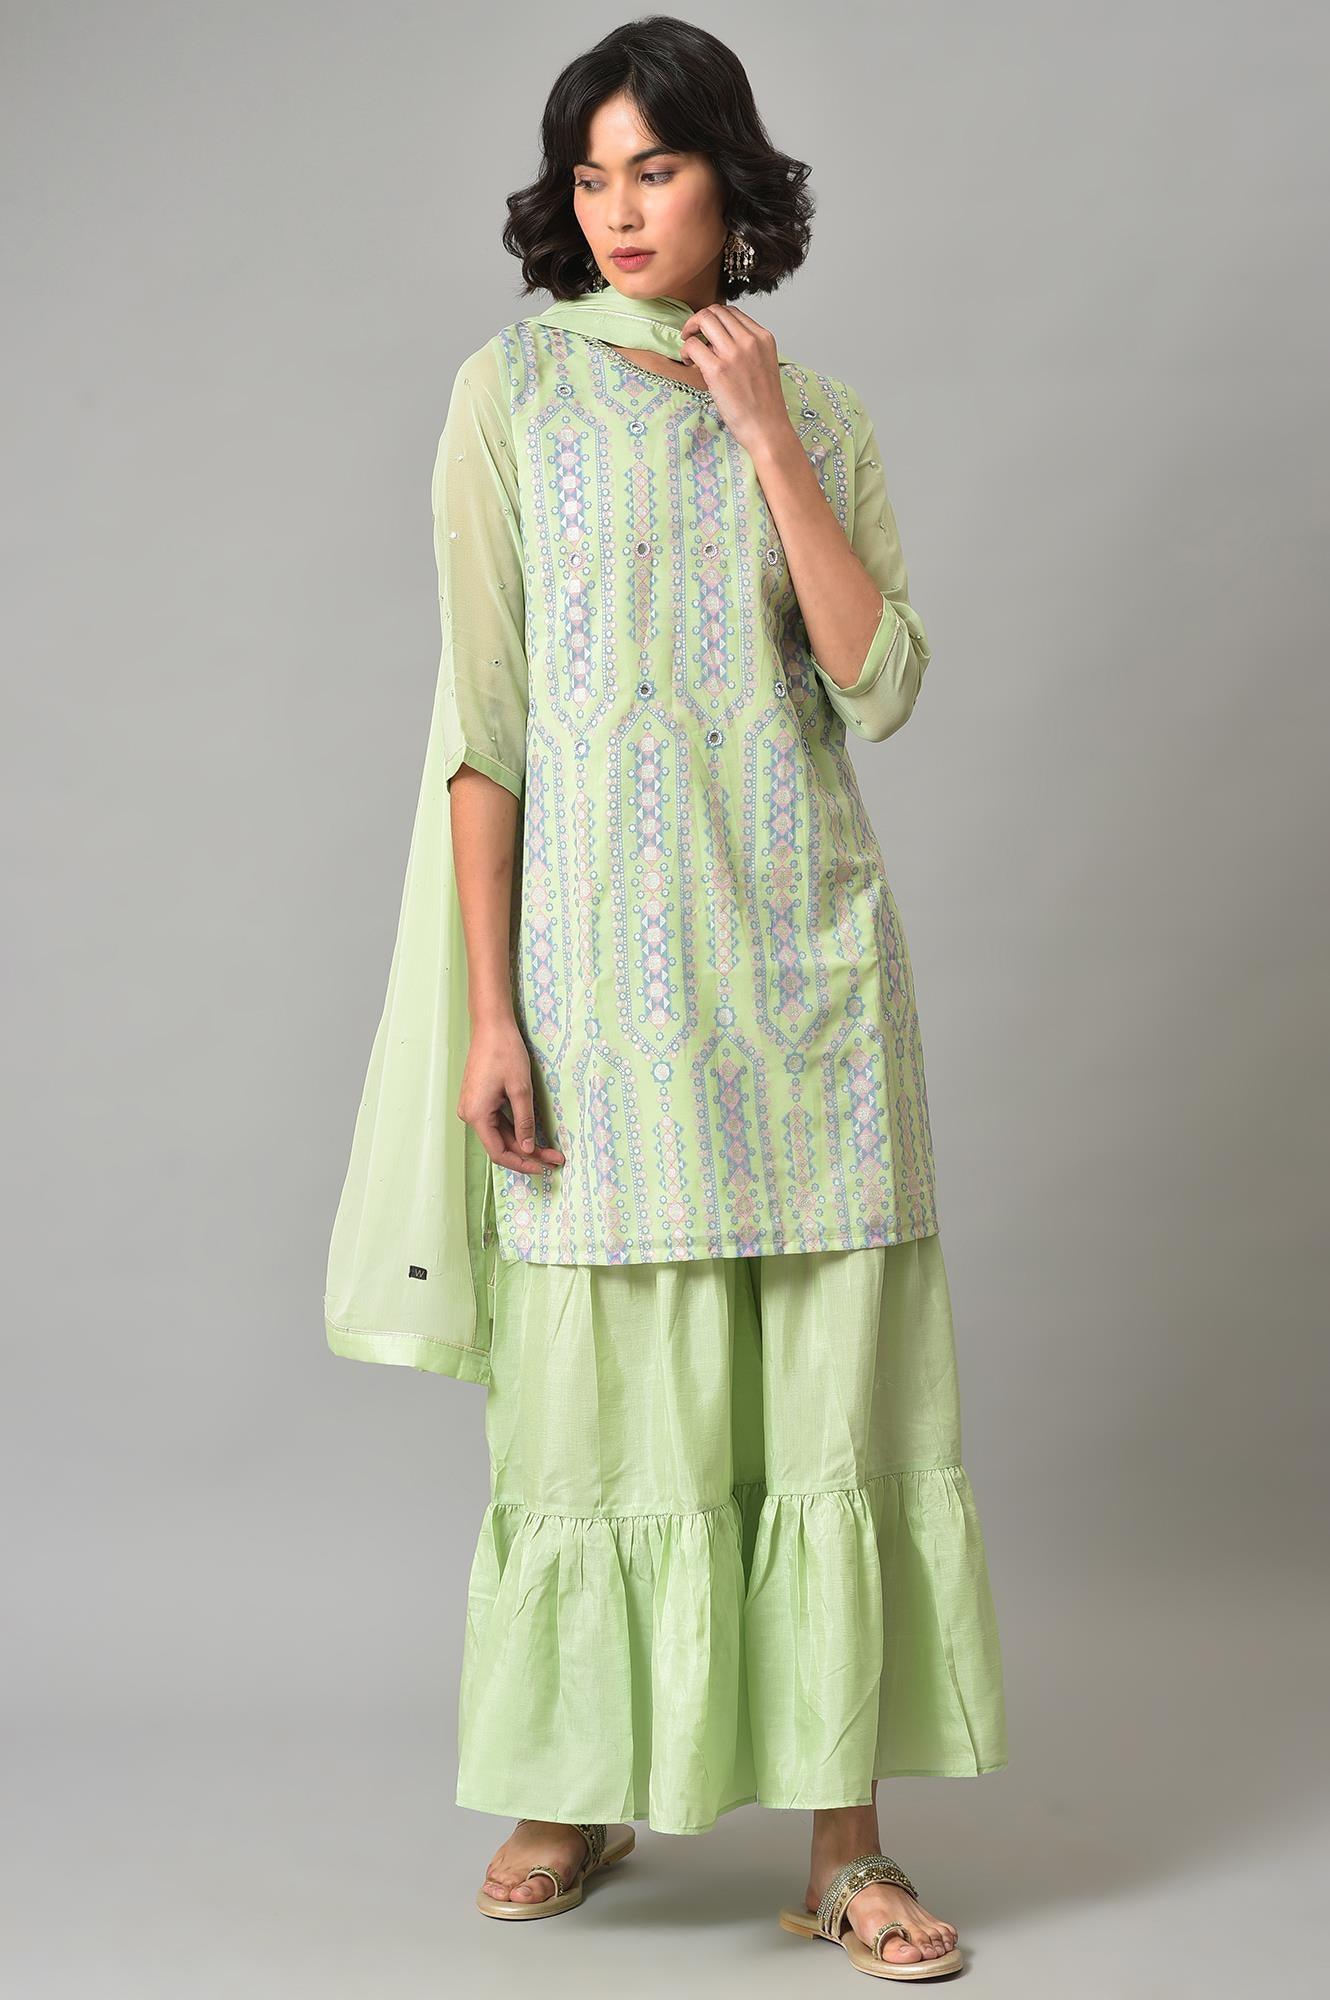 Green Printed kurta, Sharara And Dupatta Set - wforwoman